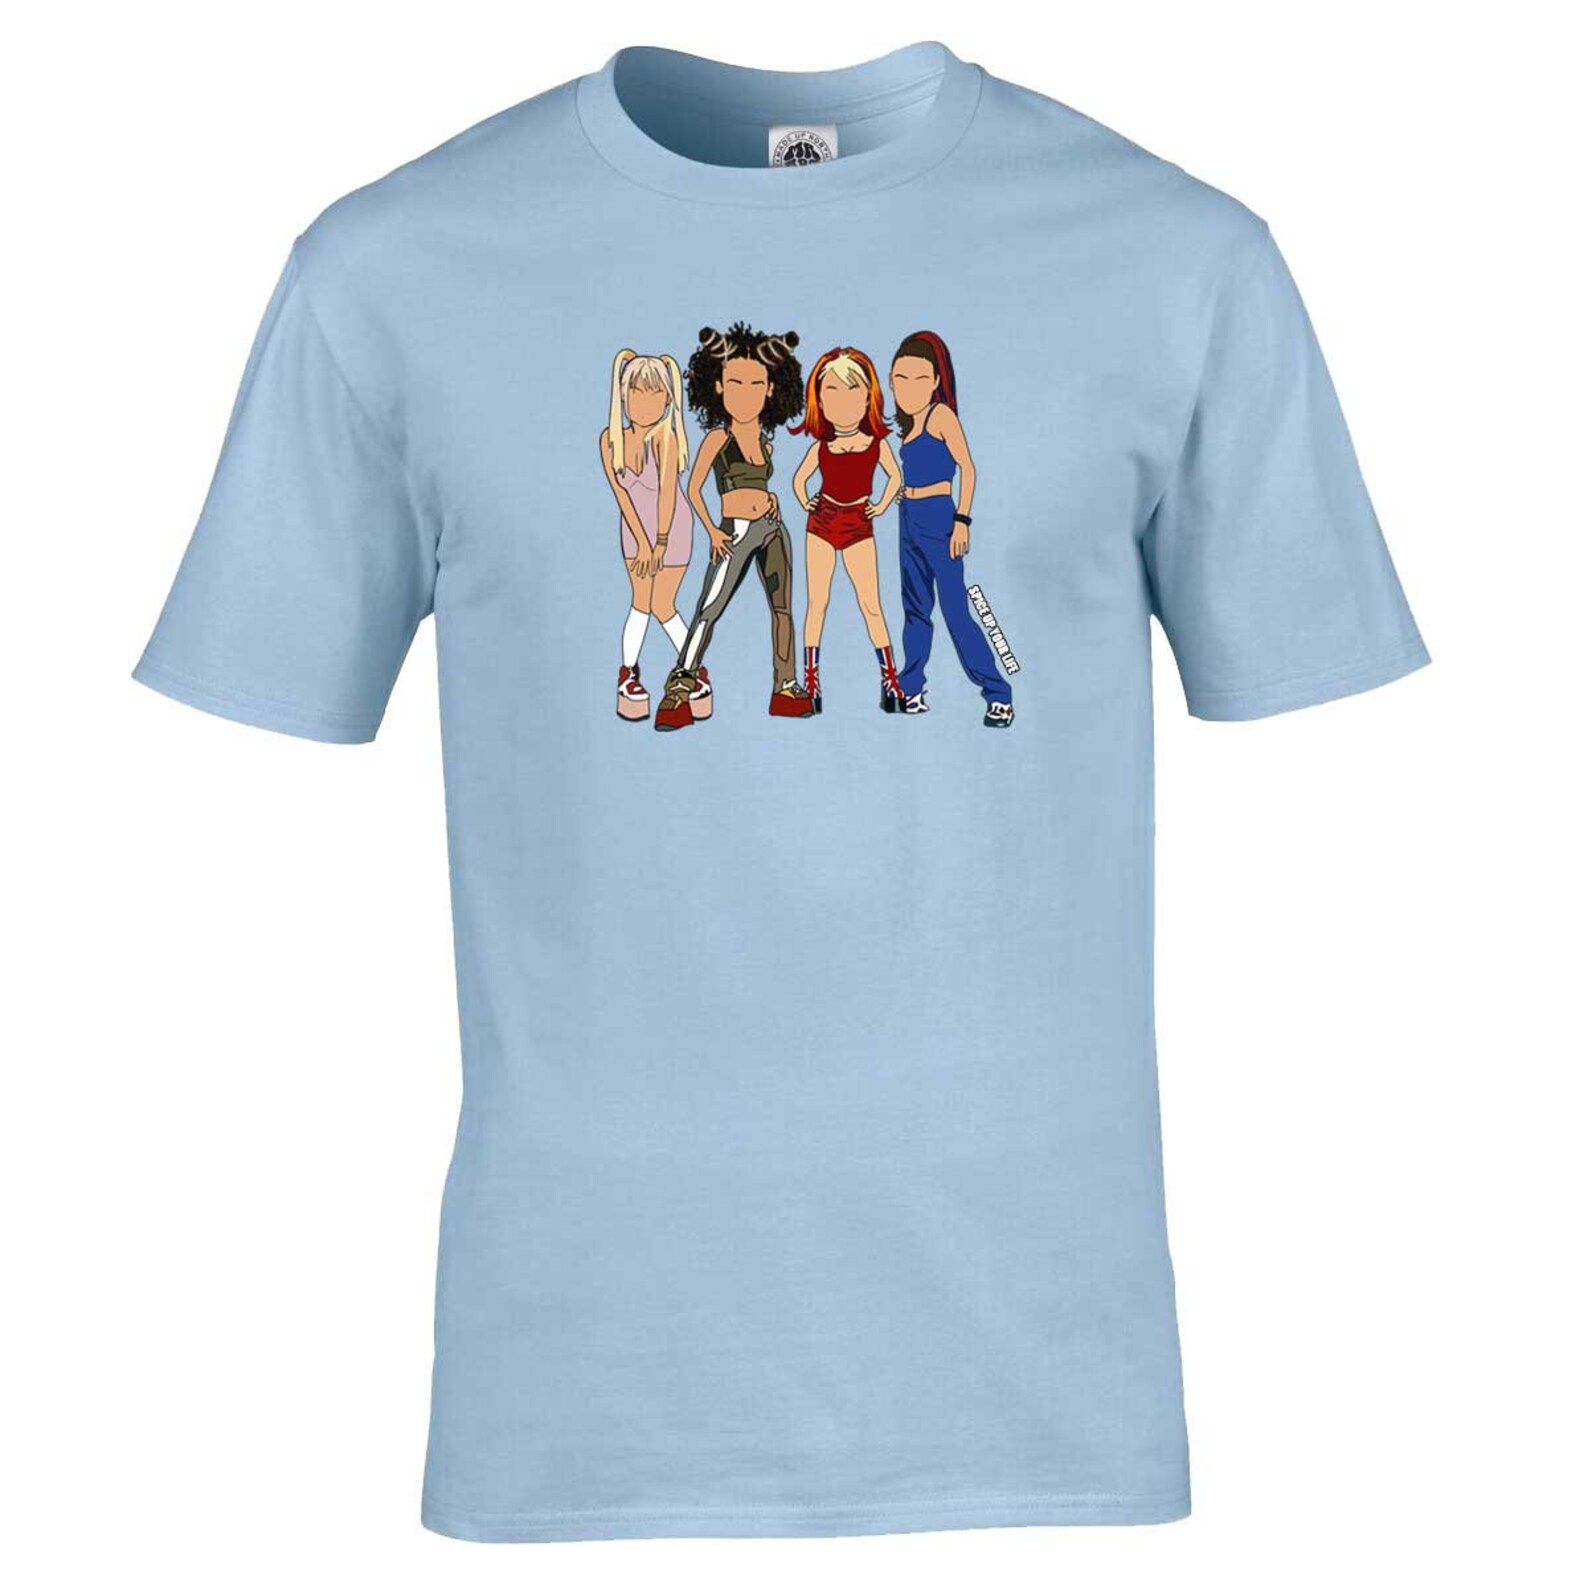 Unisex Spice Girls T-Shirt | Etsy